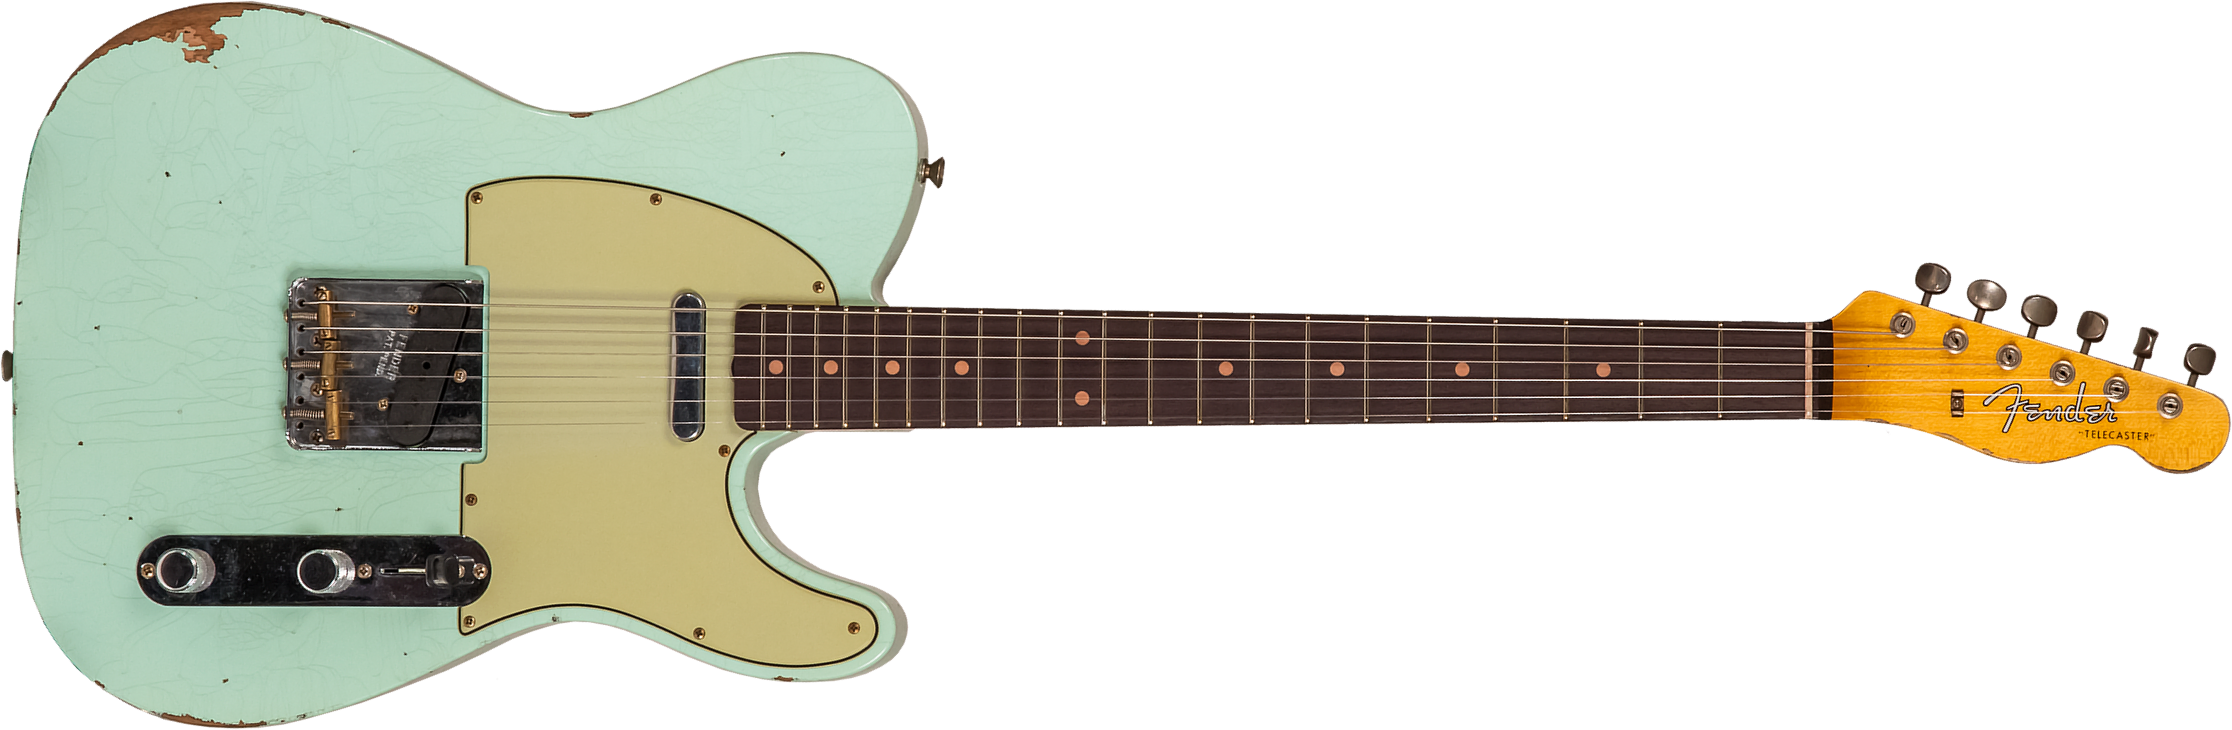 Fender Custom Shop Tele 1961 2s Ht Rw #cz565334 - Relic Faded Surf Green - E-Gitarre in Teleform - Main picture